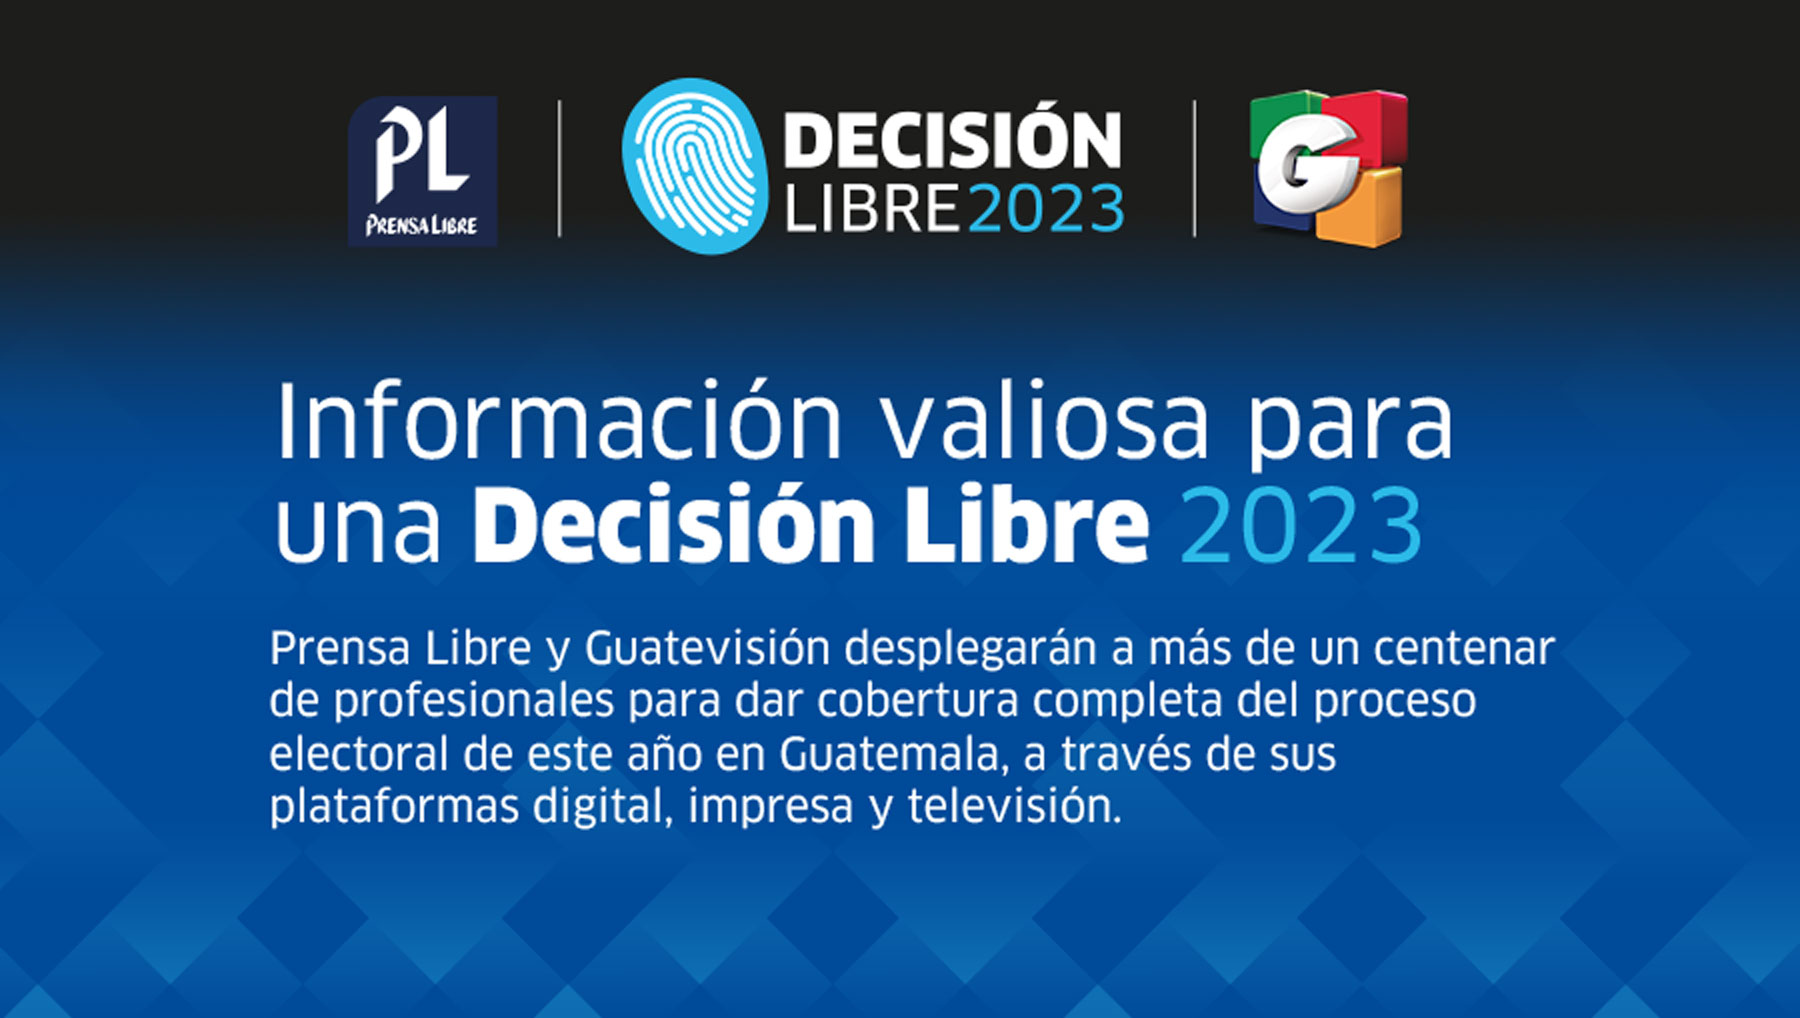 Prensa Libre y Guatevisión lanzan su cobertura de las elecciones 2023 en Guatemala. 